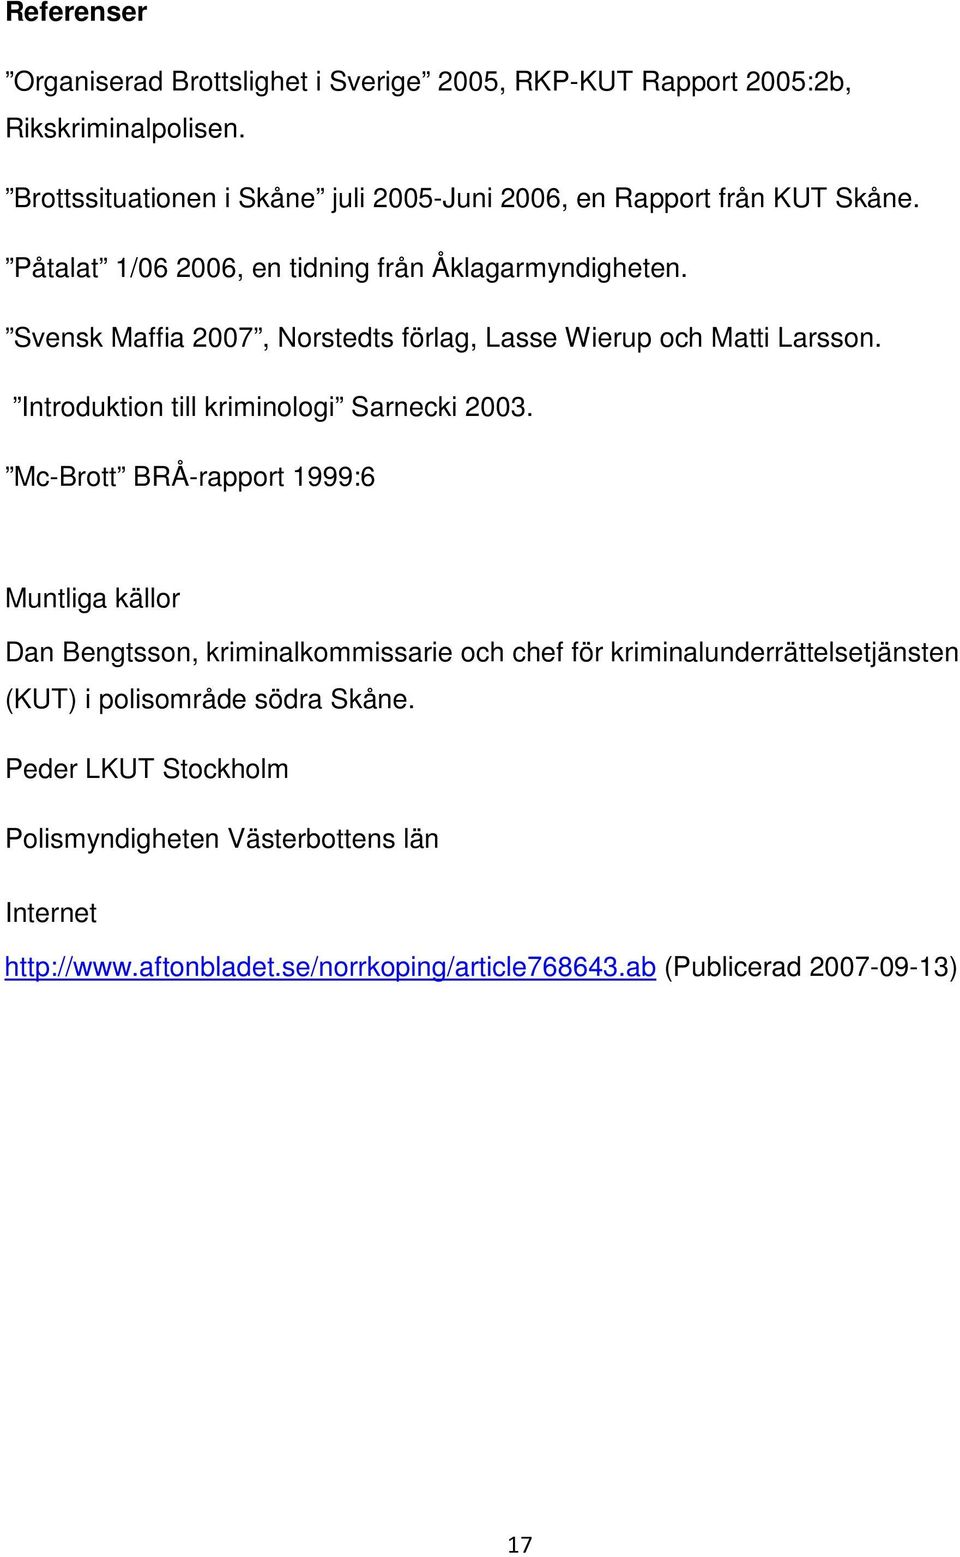 Svensk Maffia 2007, Norstedts förlag, Lasse Wierup och Matti Larsson. Introduktion till kriminologi Sarnecki 2003.